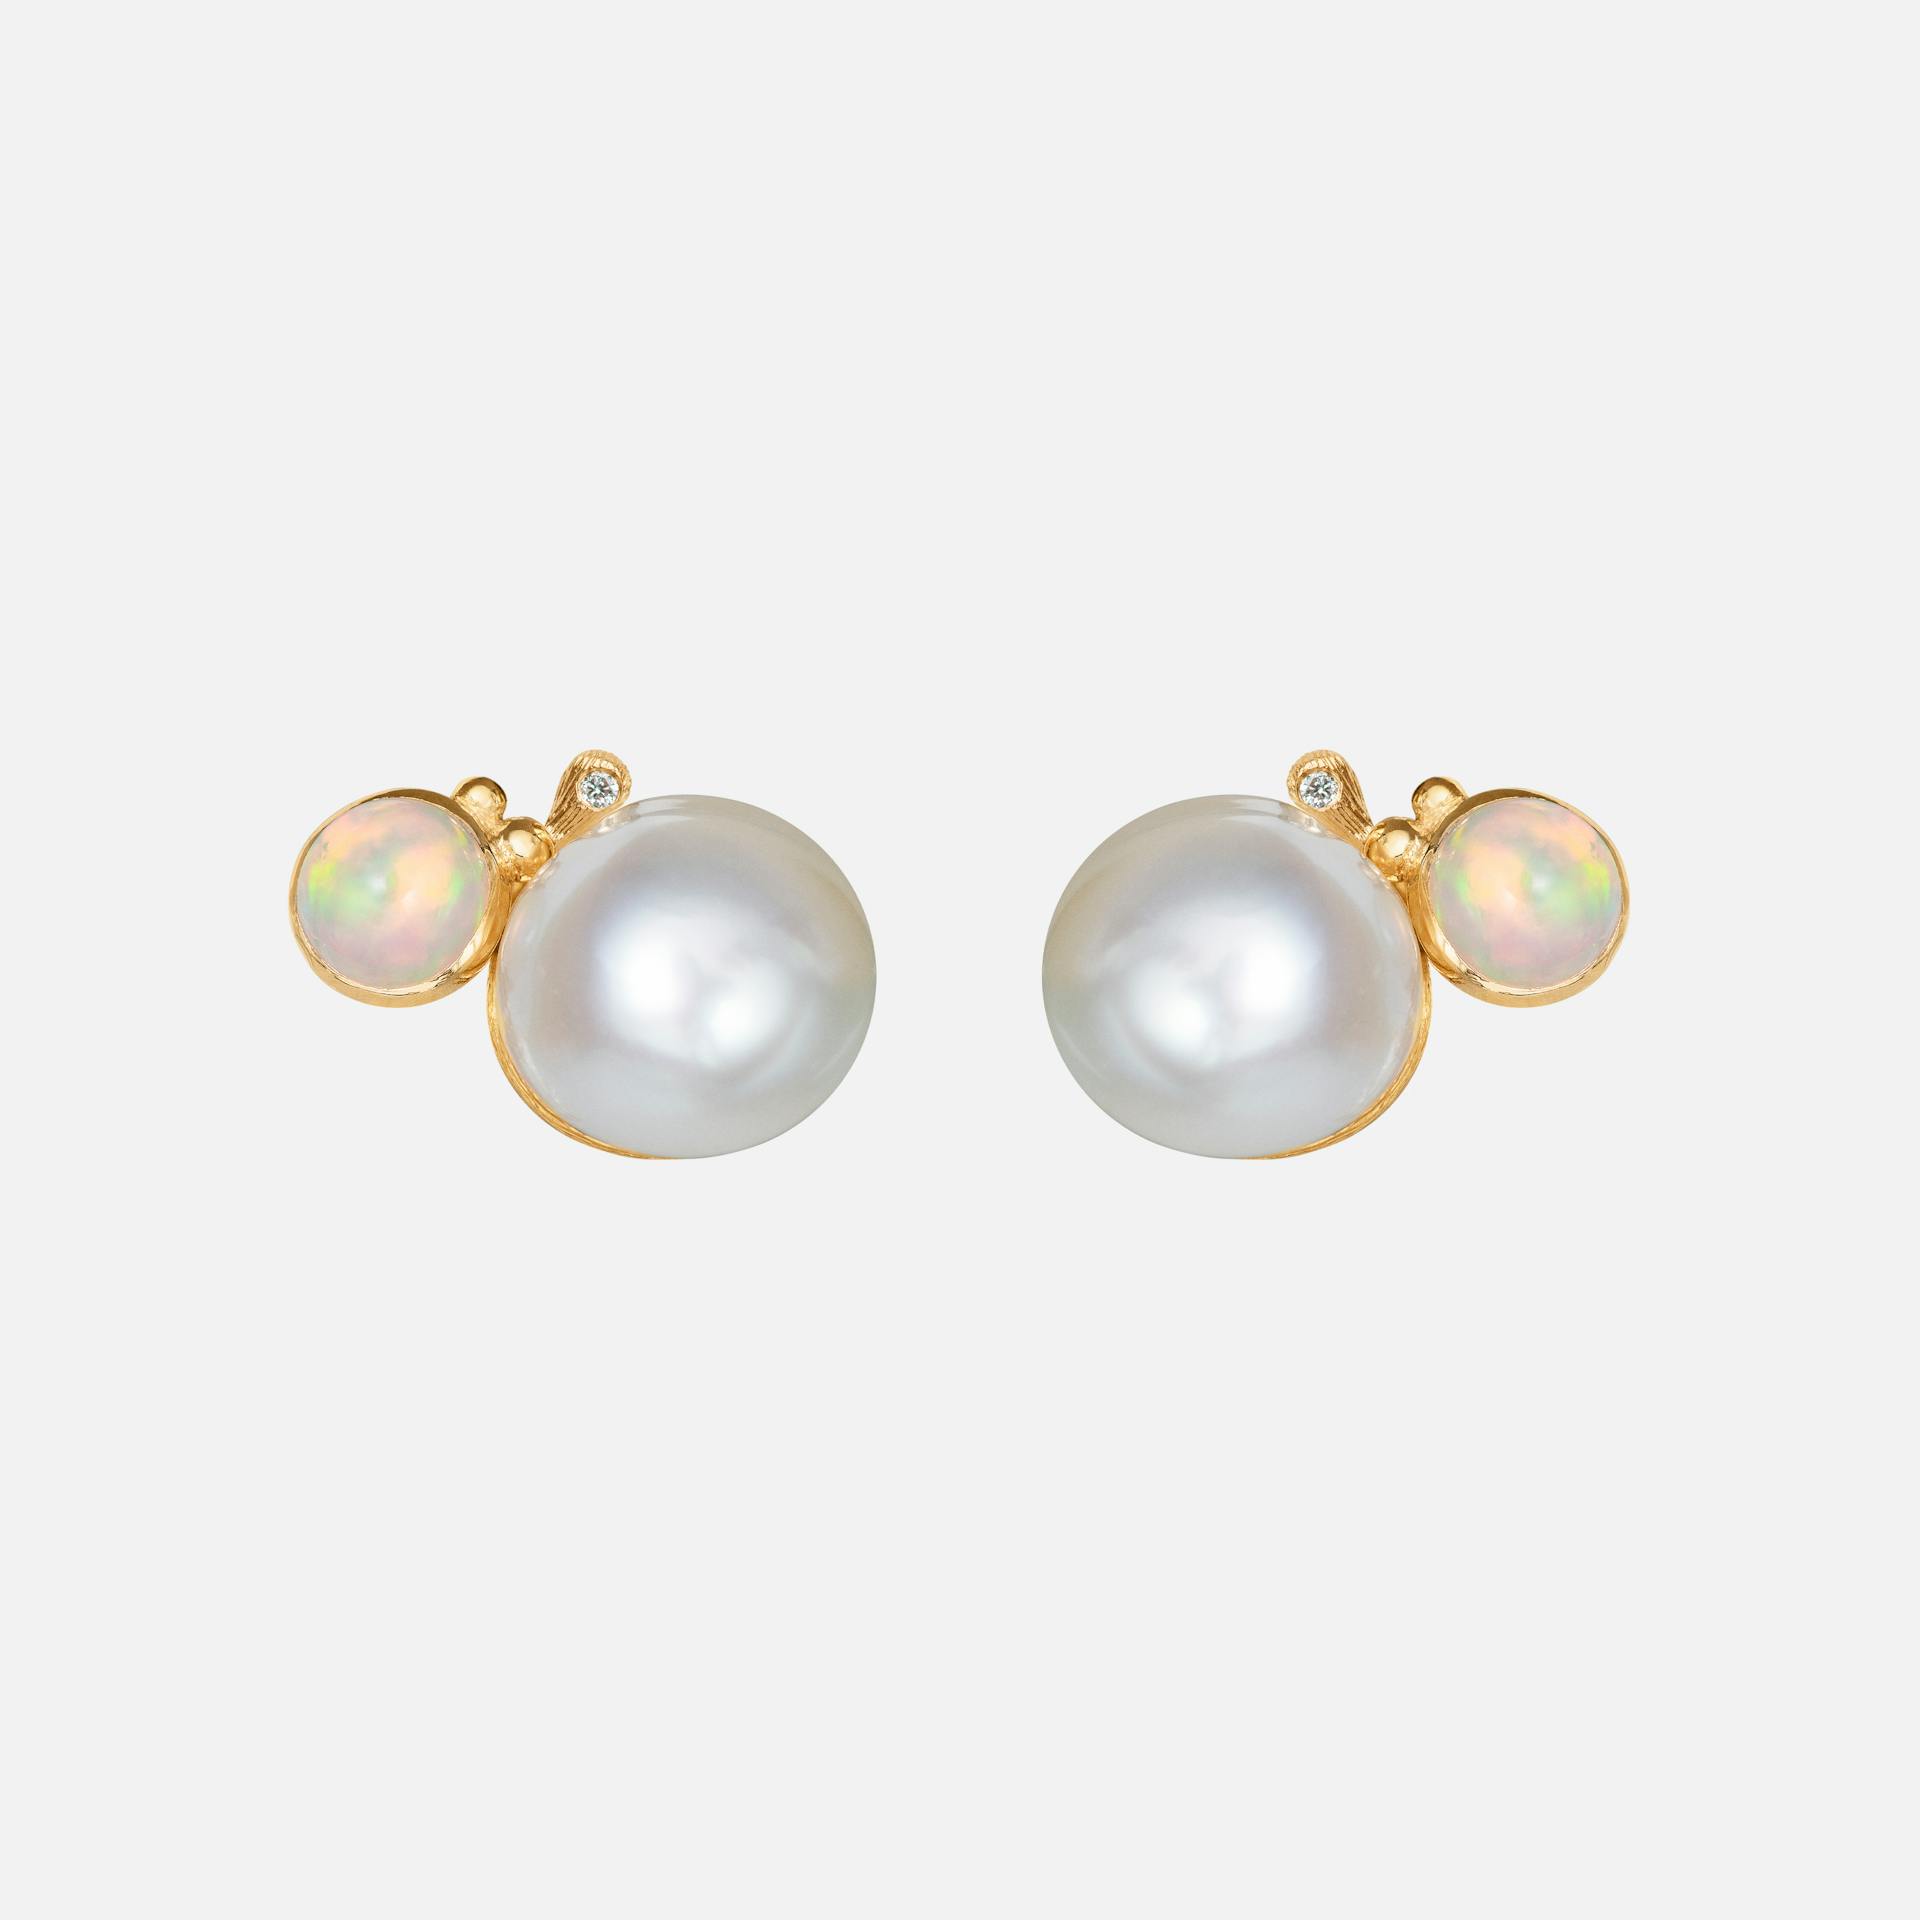 BoHo Pearl Stud Earrings in Gold  with Opal and Diamonds  |  Ole Lynggaard Copenhagen